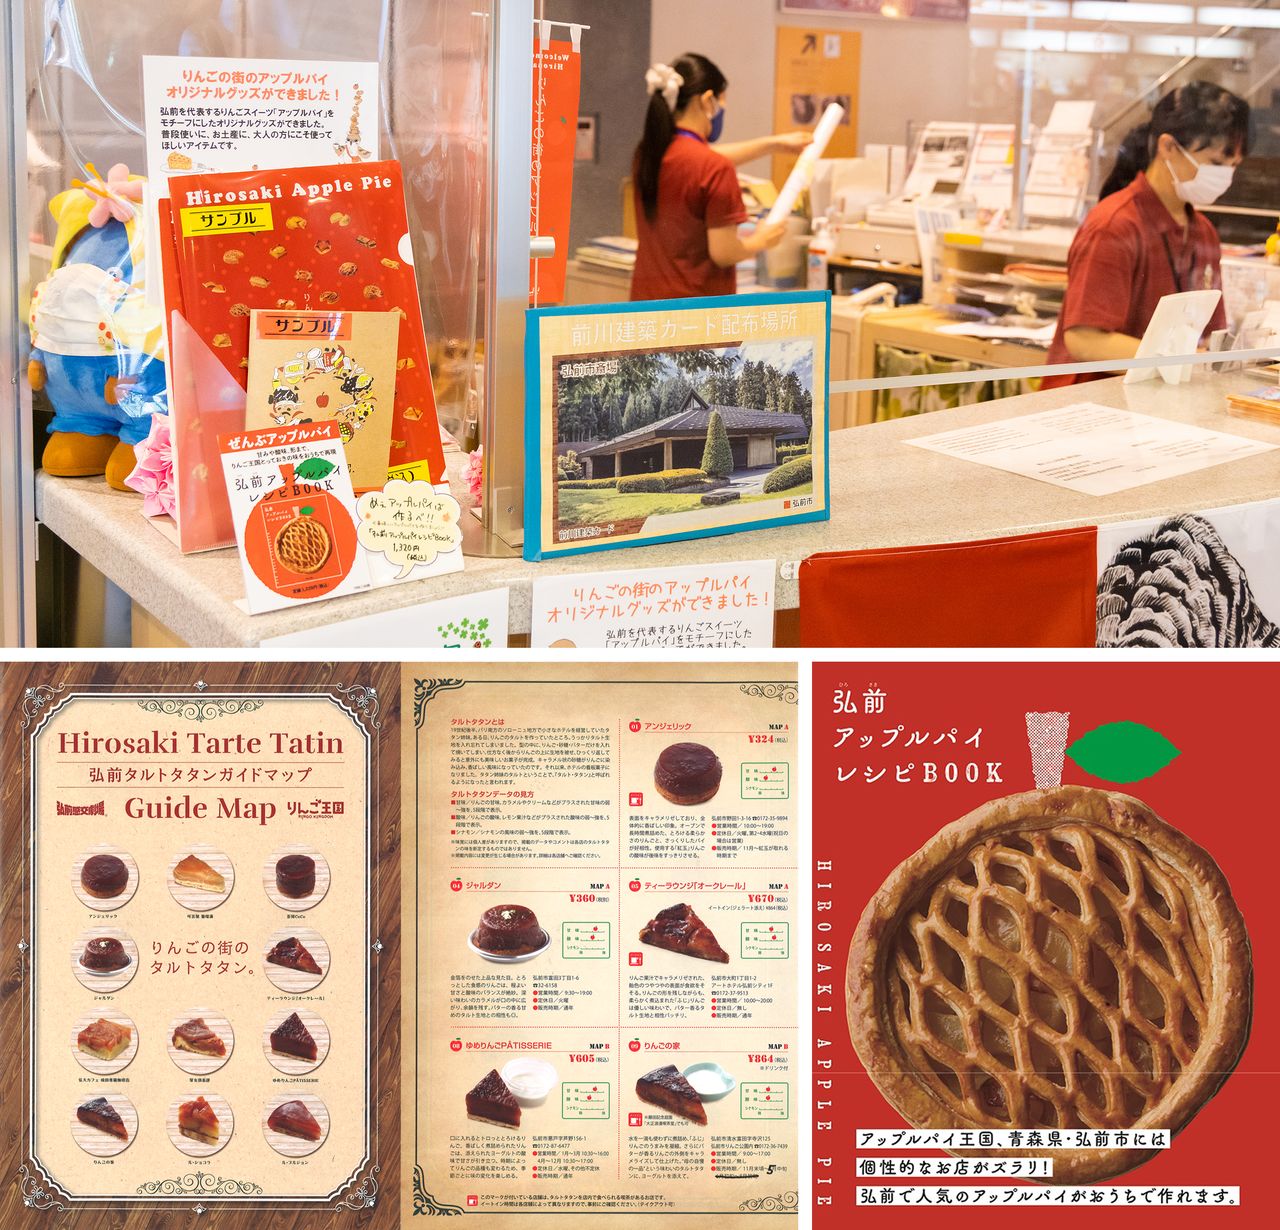 （上）透明文件夹和日志本可以在观光馆的咨询柜台等处买到；（左下）《弘前法式苹果挞导游地图》；（右下）《弘前苹果派食谱BOOK》